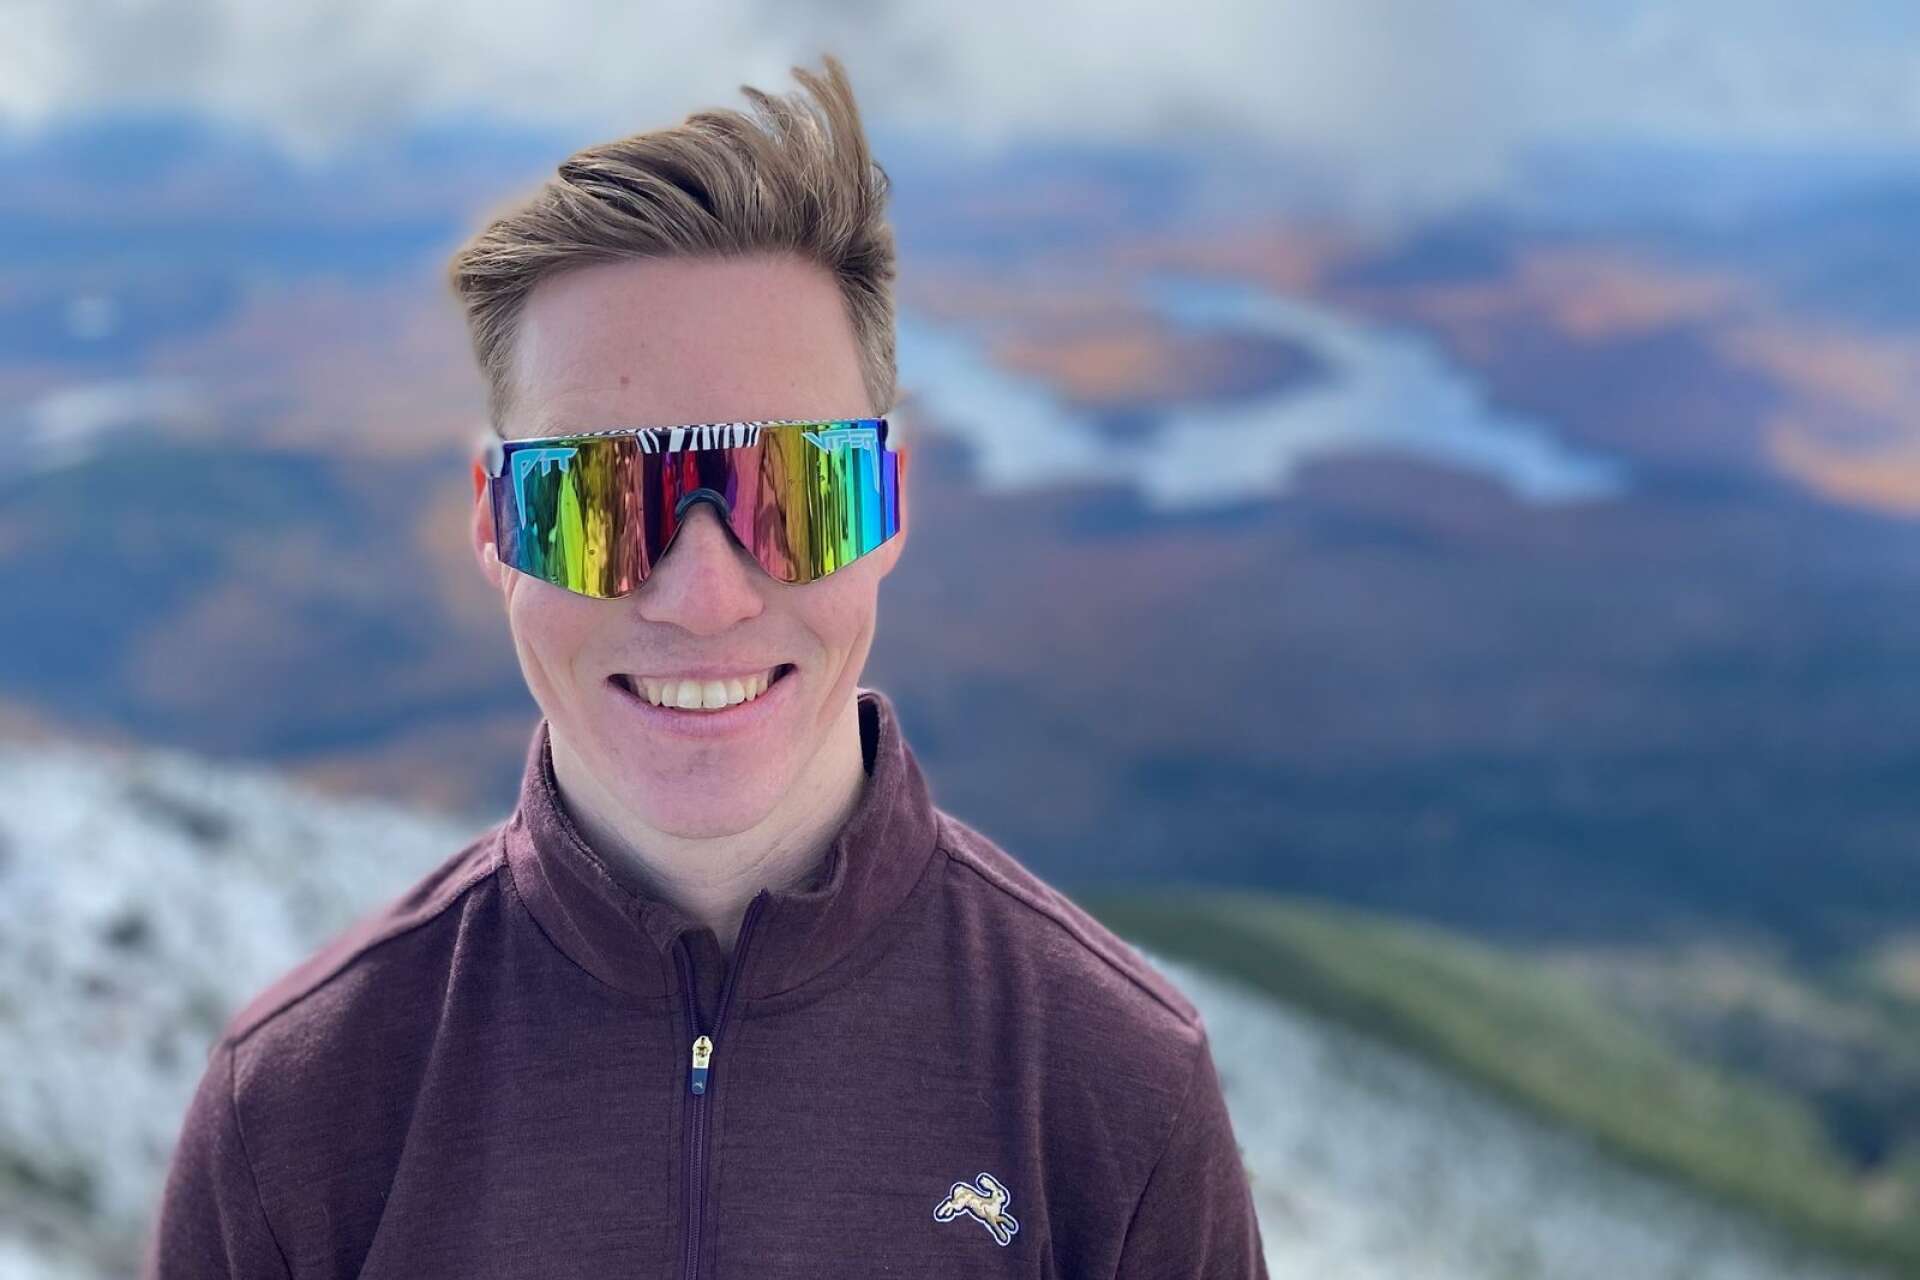 David för en månad sedan när han var i USA över helgen. Bild från Mount Whiteface, med utsikt över Lake Placid där man ser snö och höstfärger.